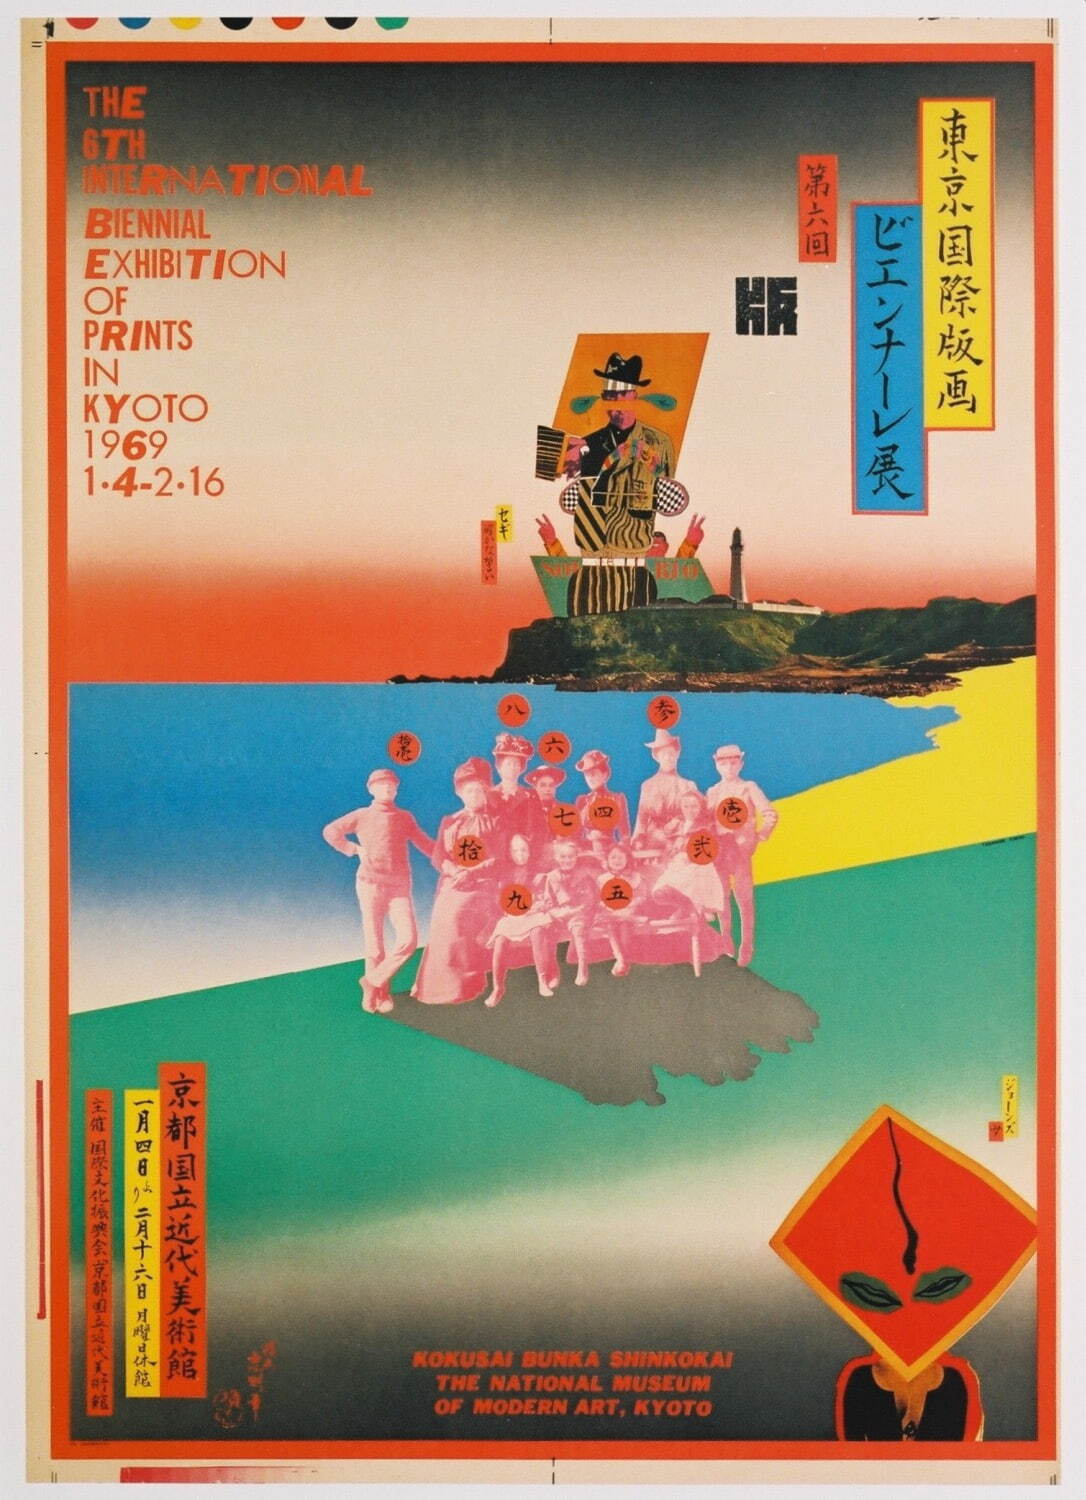 横尾忠則 「第6回東京国際版画ビエンナーレ展」ポスター 1968年 国立工芸館蔵